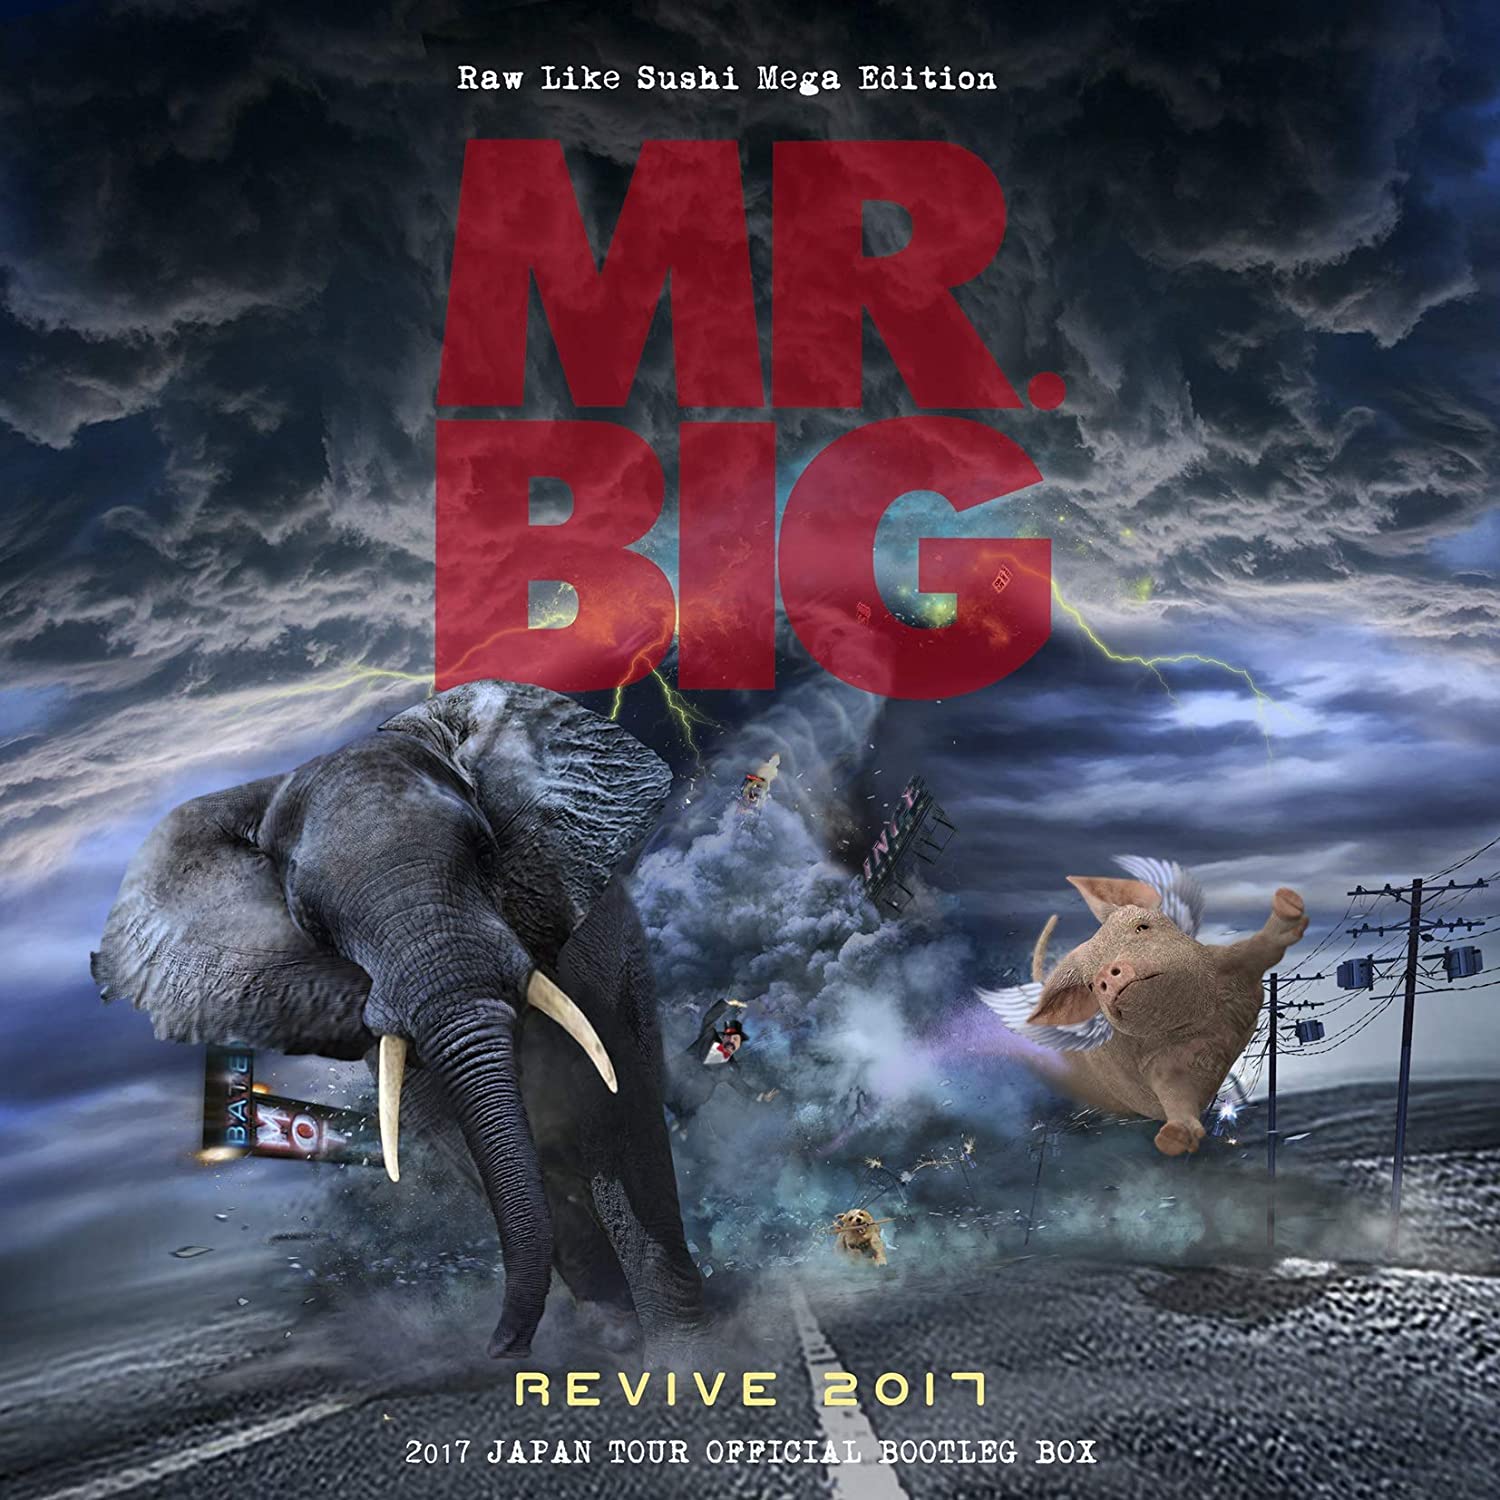 MR.BIG の2017年ジャパンツアー9公演をCD18枚に収録した限定ボックス ...